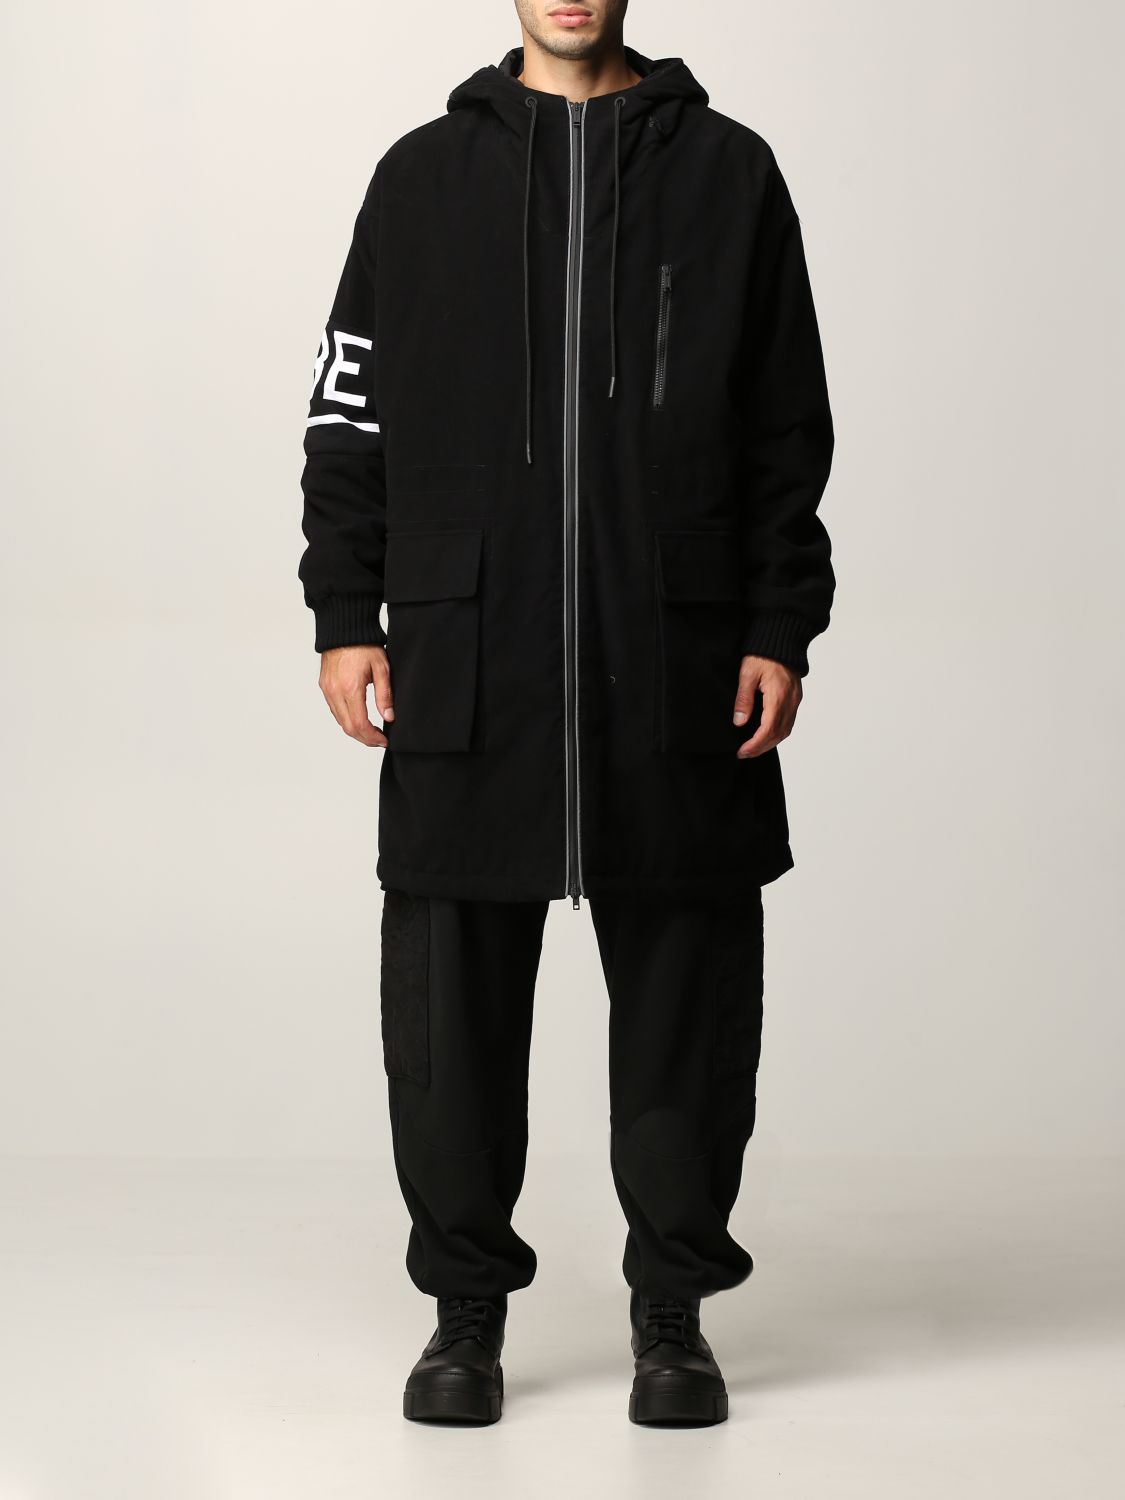 ICEBERG: jacket for man - Black | Iceberg jacket O060 0016 online at ...